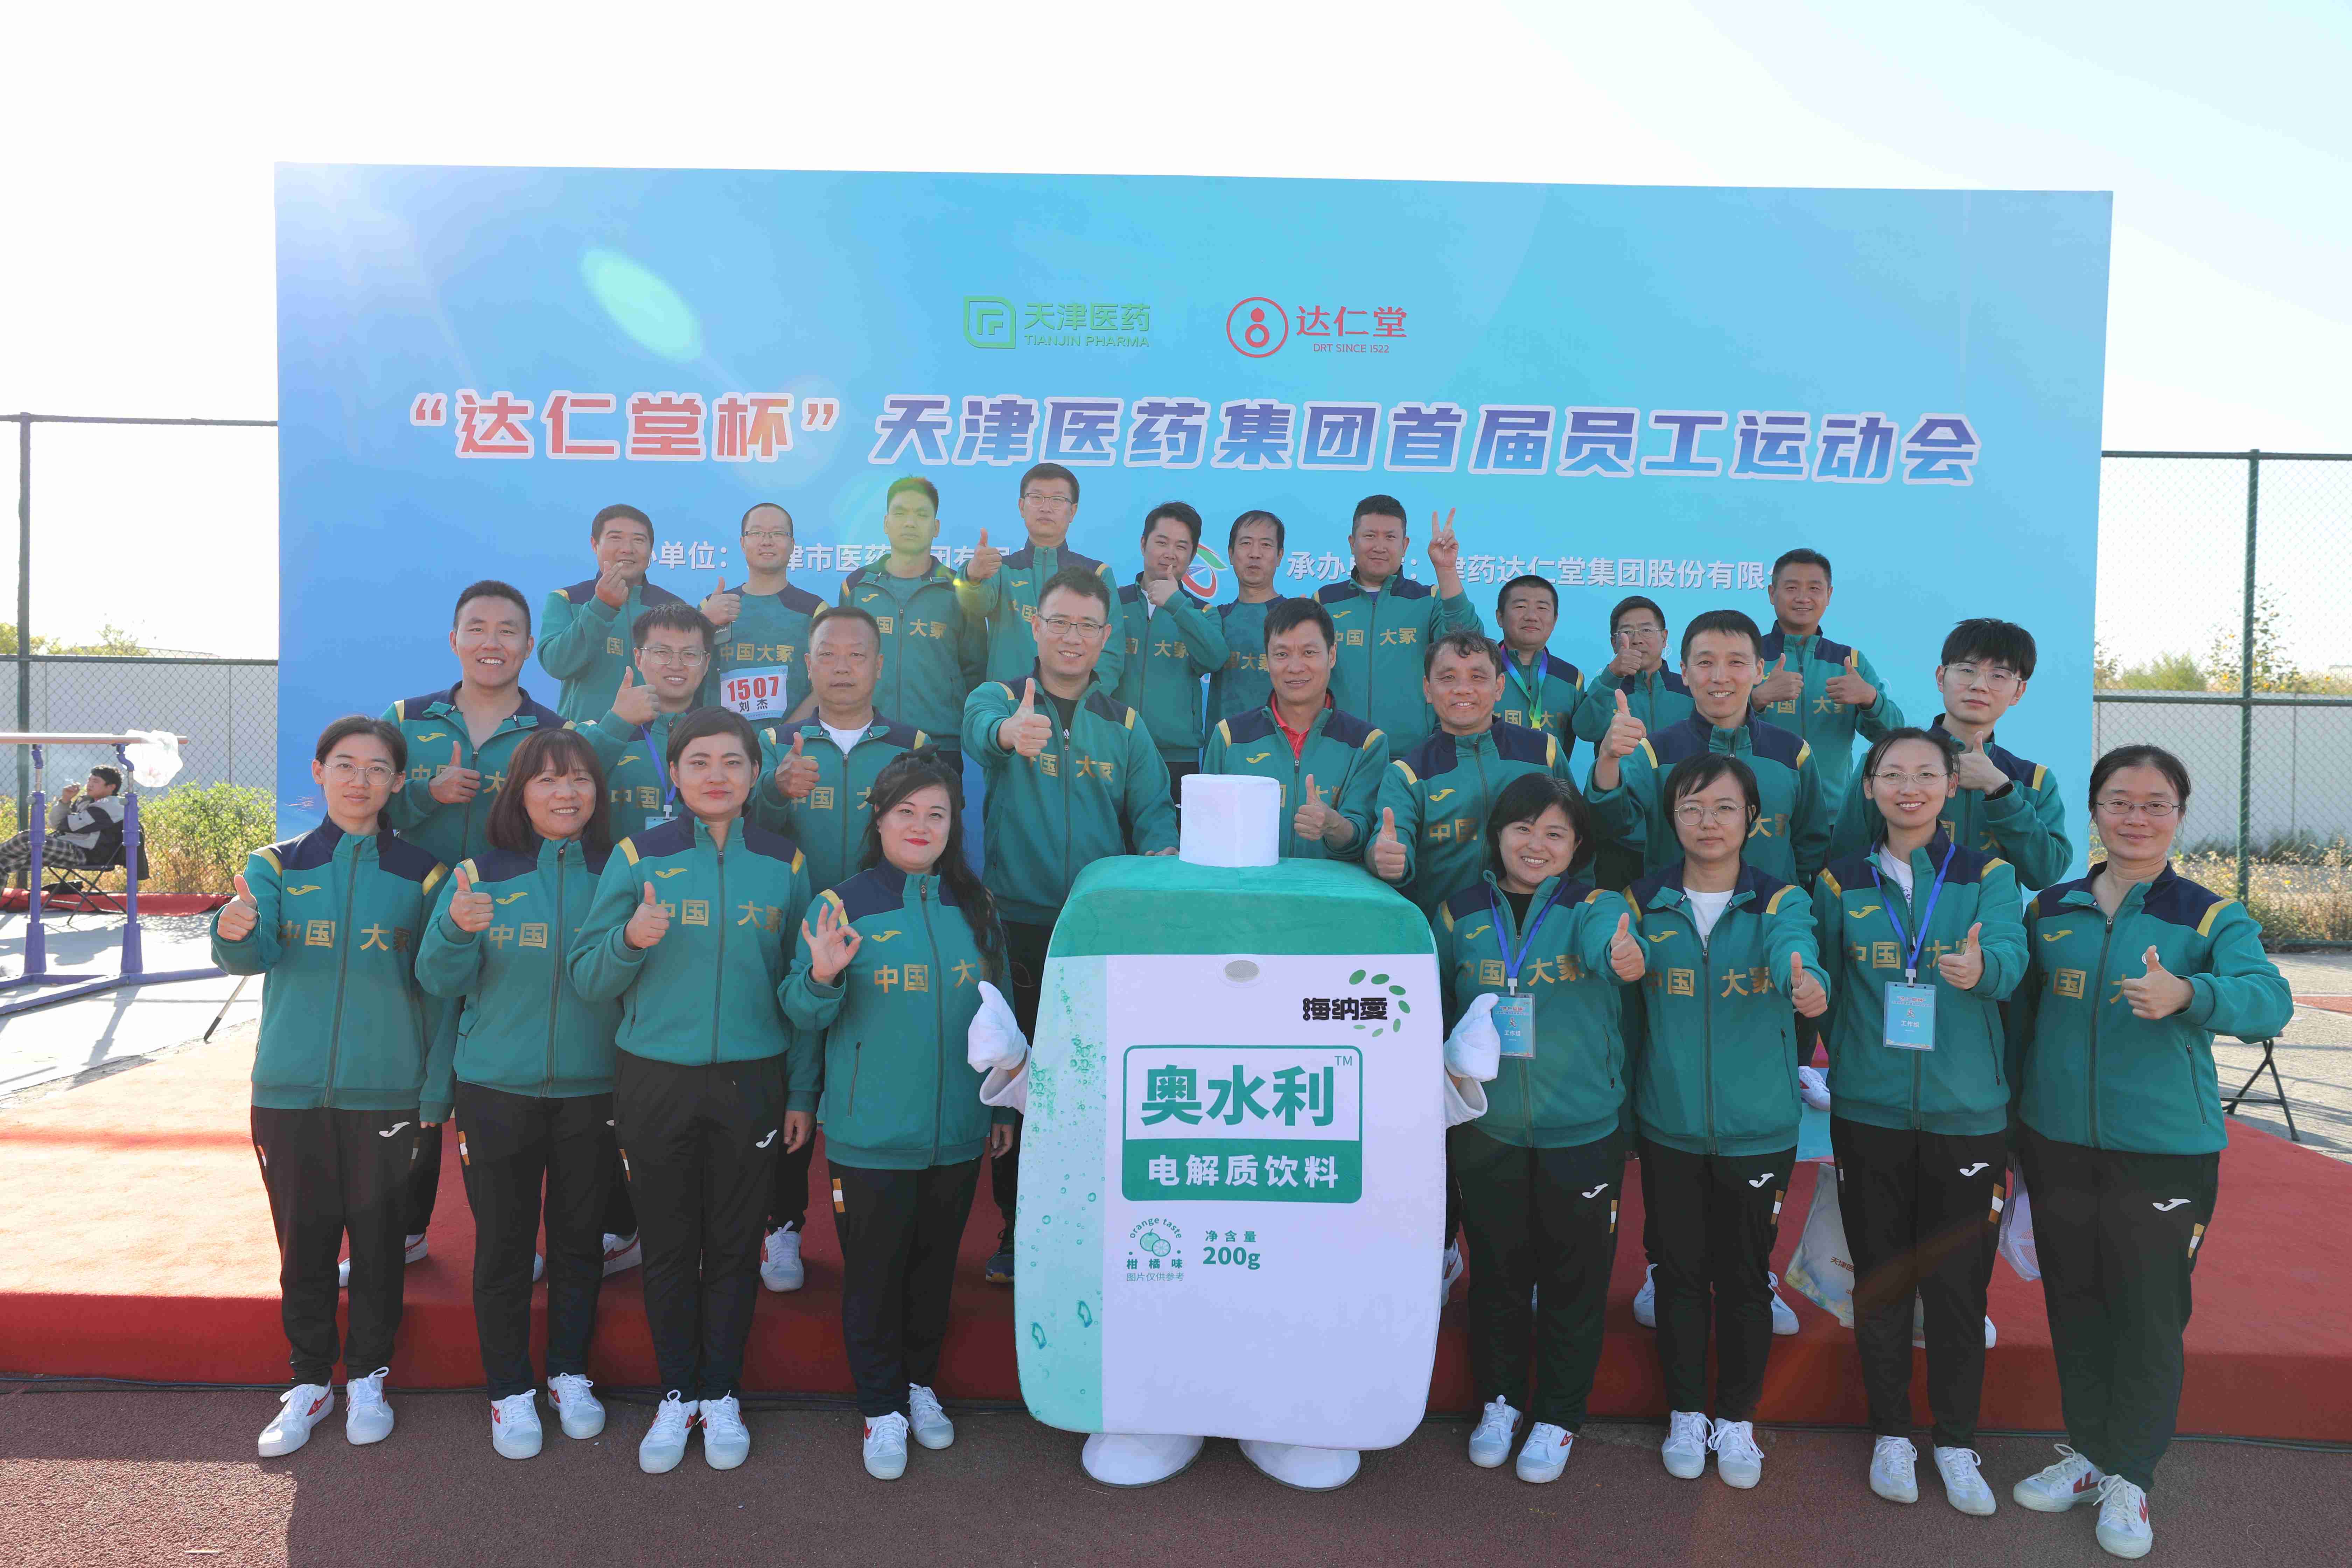 中国大冢代表队在天津医药集团首届 员工运动会上斩获佳绩